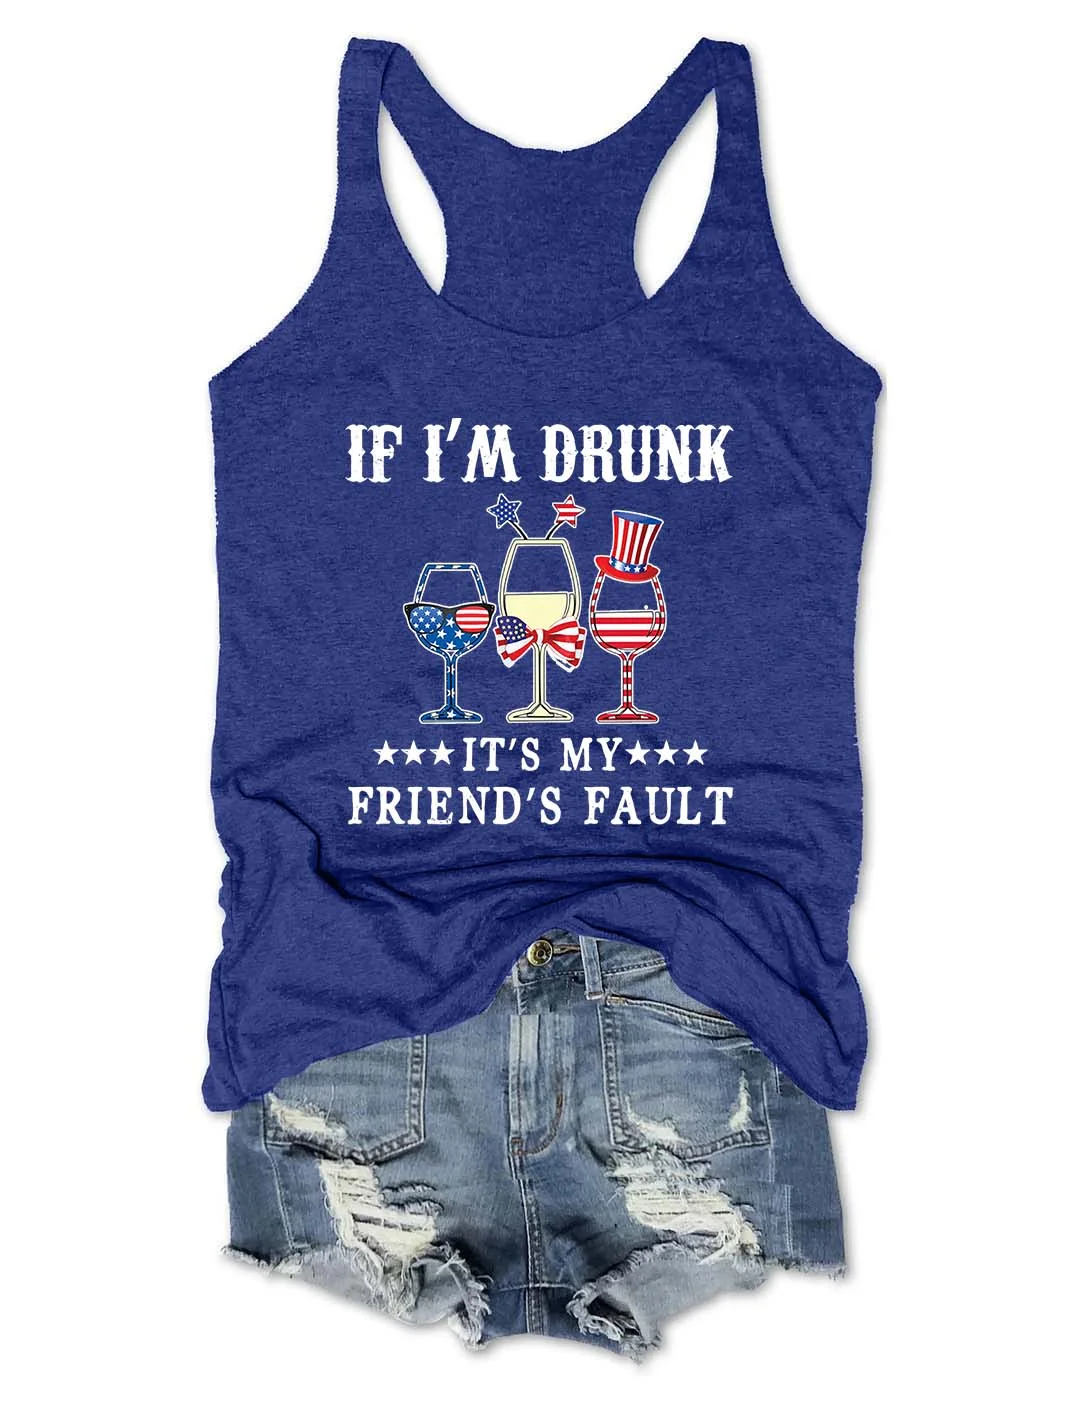 If I'm Drunk It's My Friend's Fault Tank